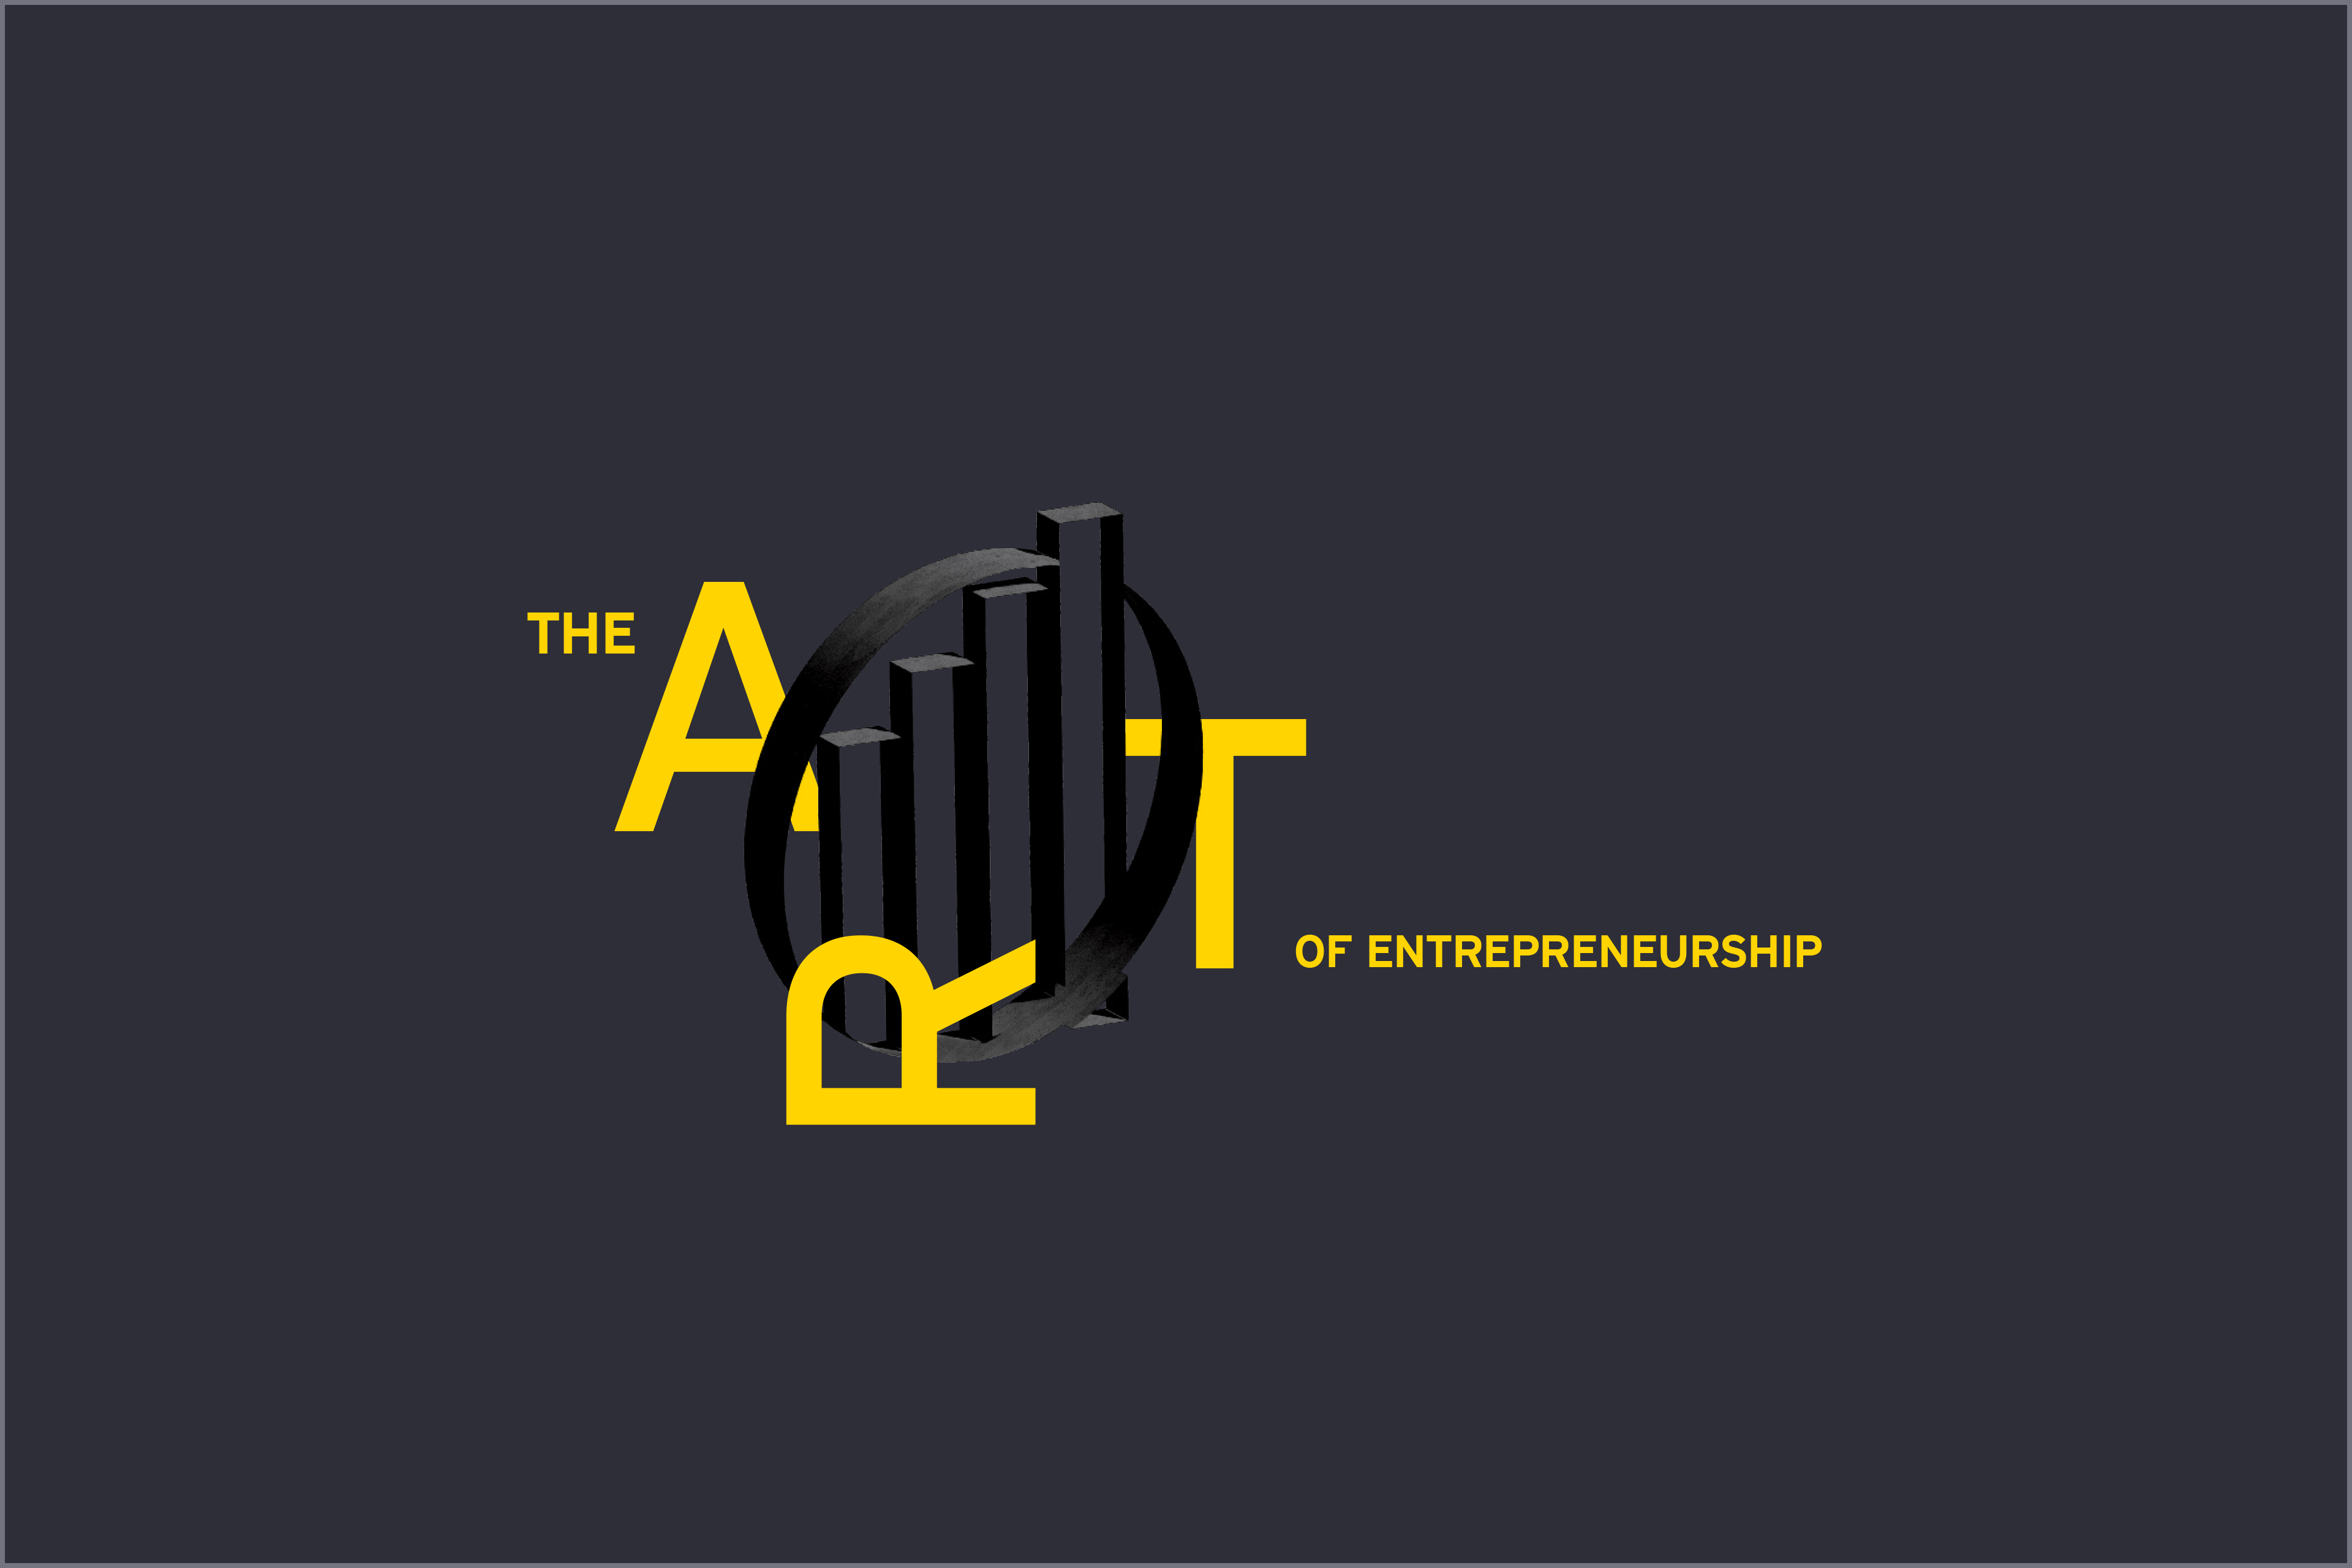 The Art of entrepreneurship